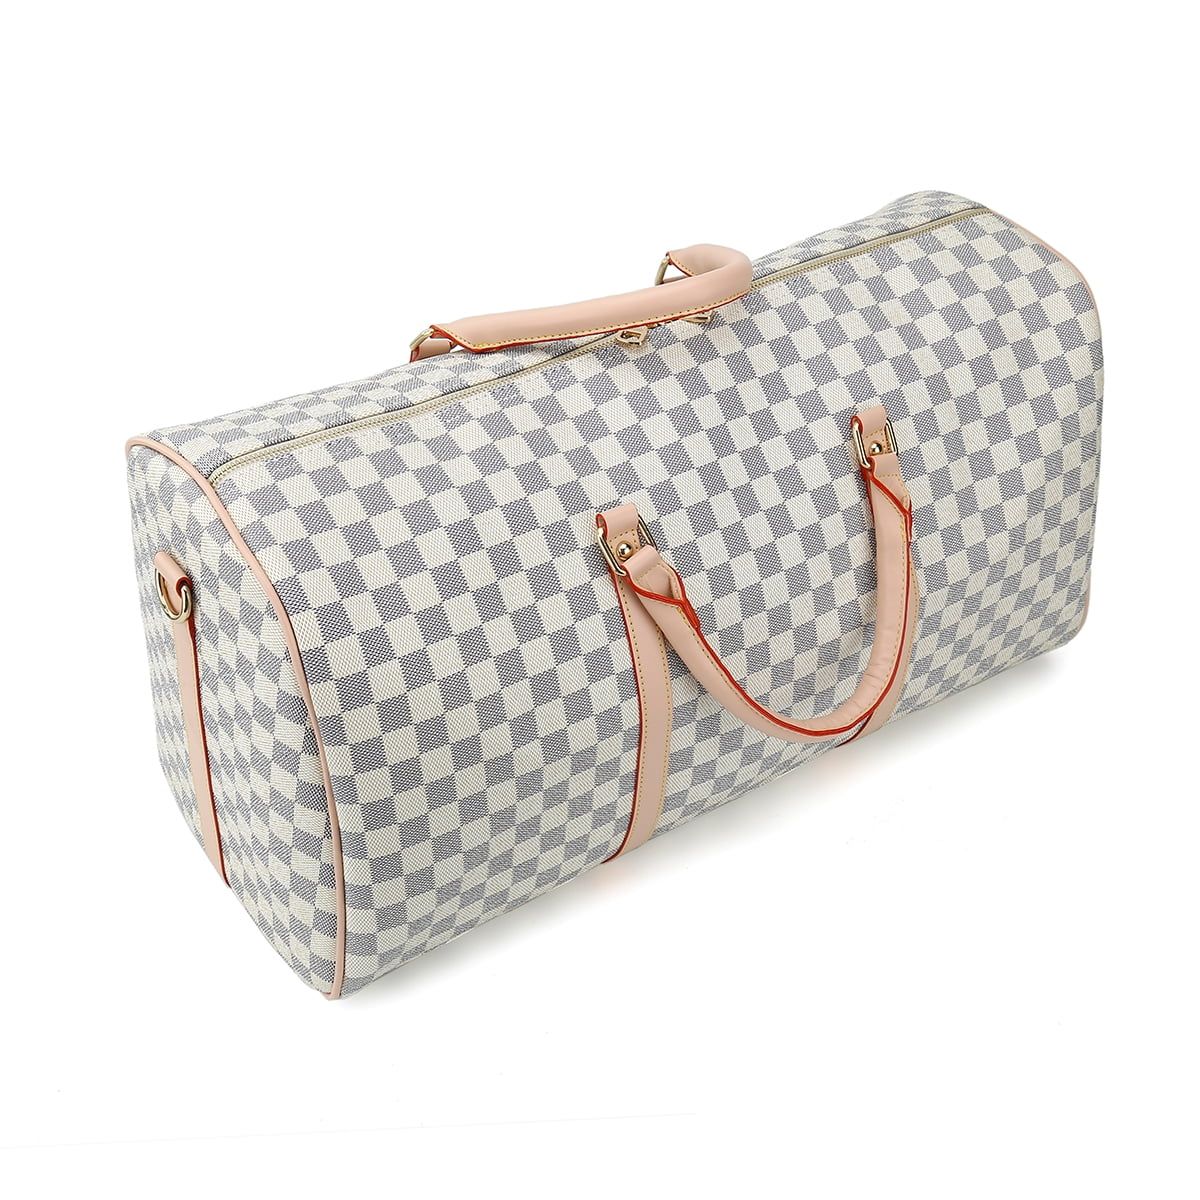 TWENTY FOUR 21" Checkered Bag Travel Duffel Bag Weekender Overnight Luggage Shoulder Bag For Men ... | Walmart (US)